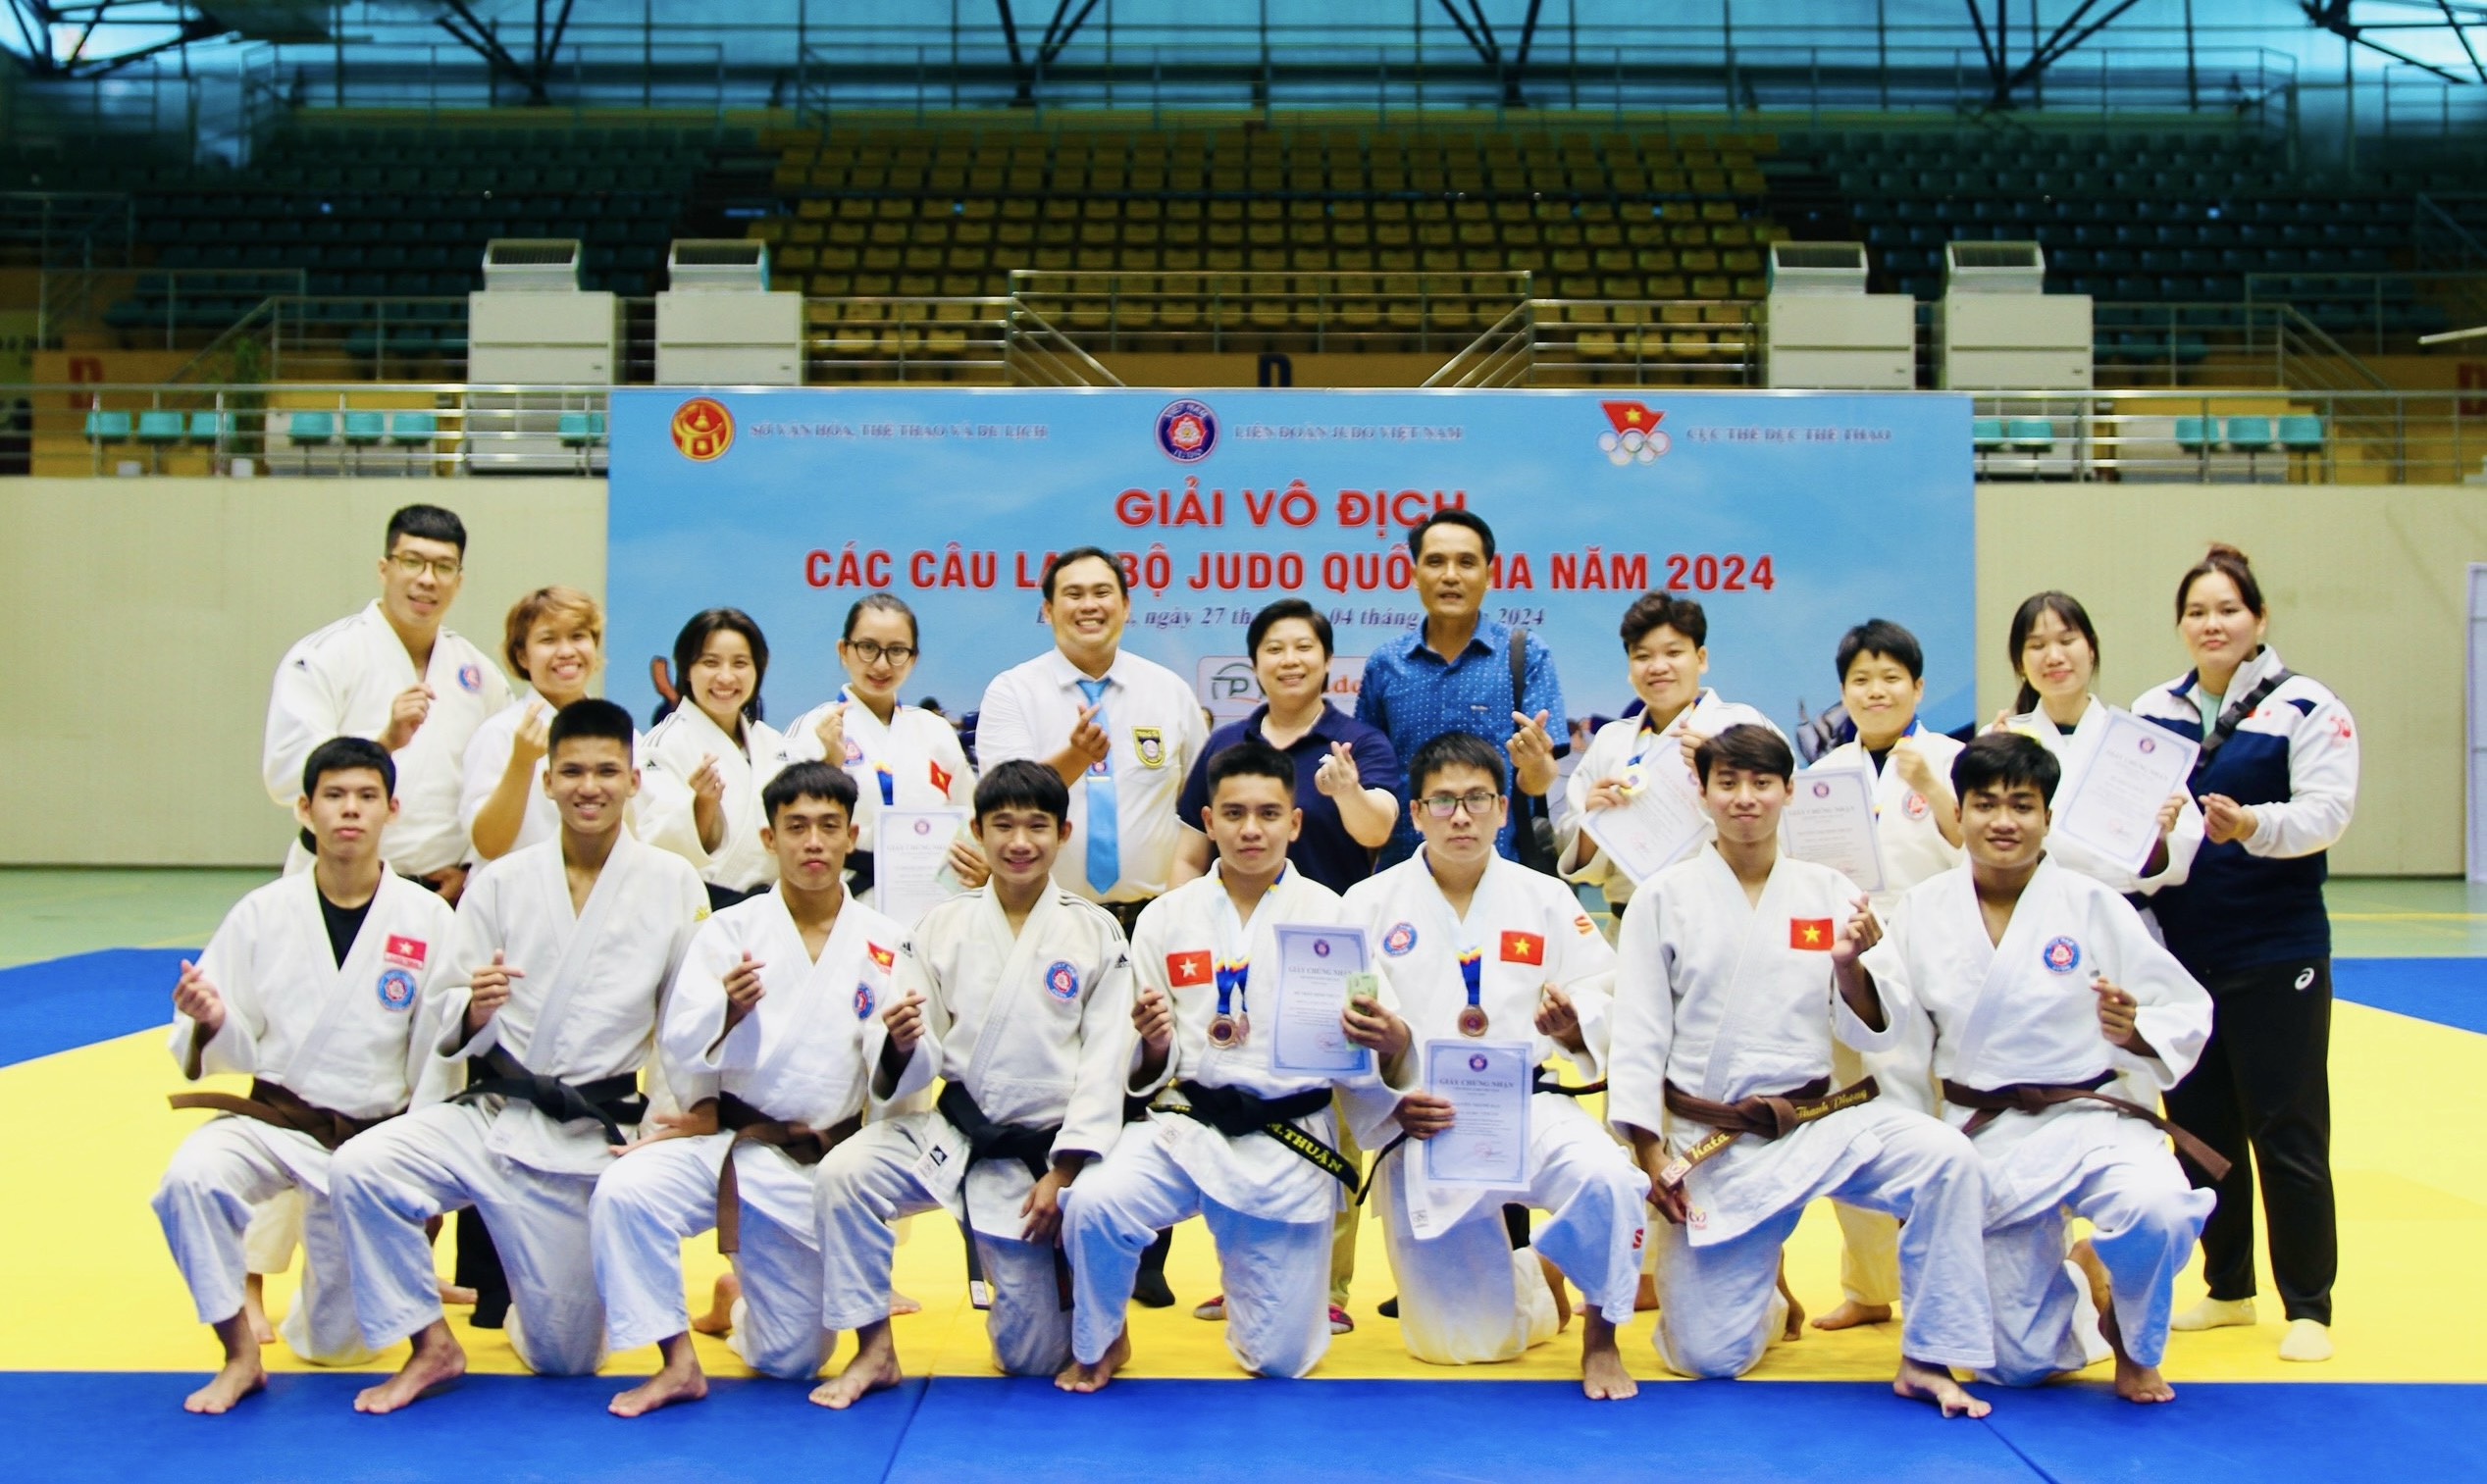 Đội tuyển judo Bà Rịa - Vũng Tàu đi thi đấu tại giải vô địch các câu lạc bộ judo Quốc gia.